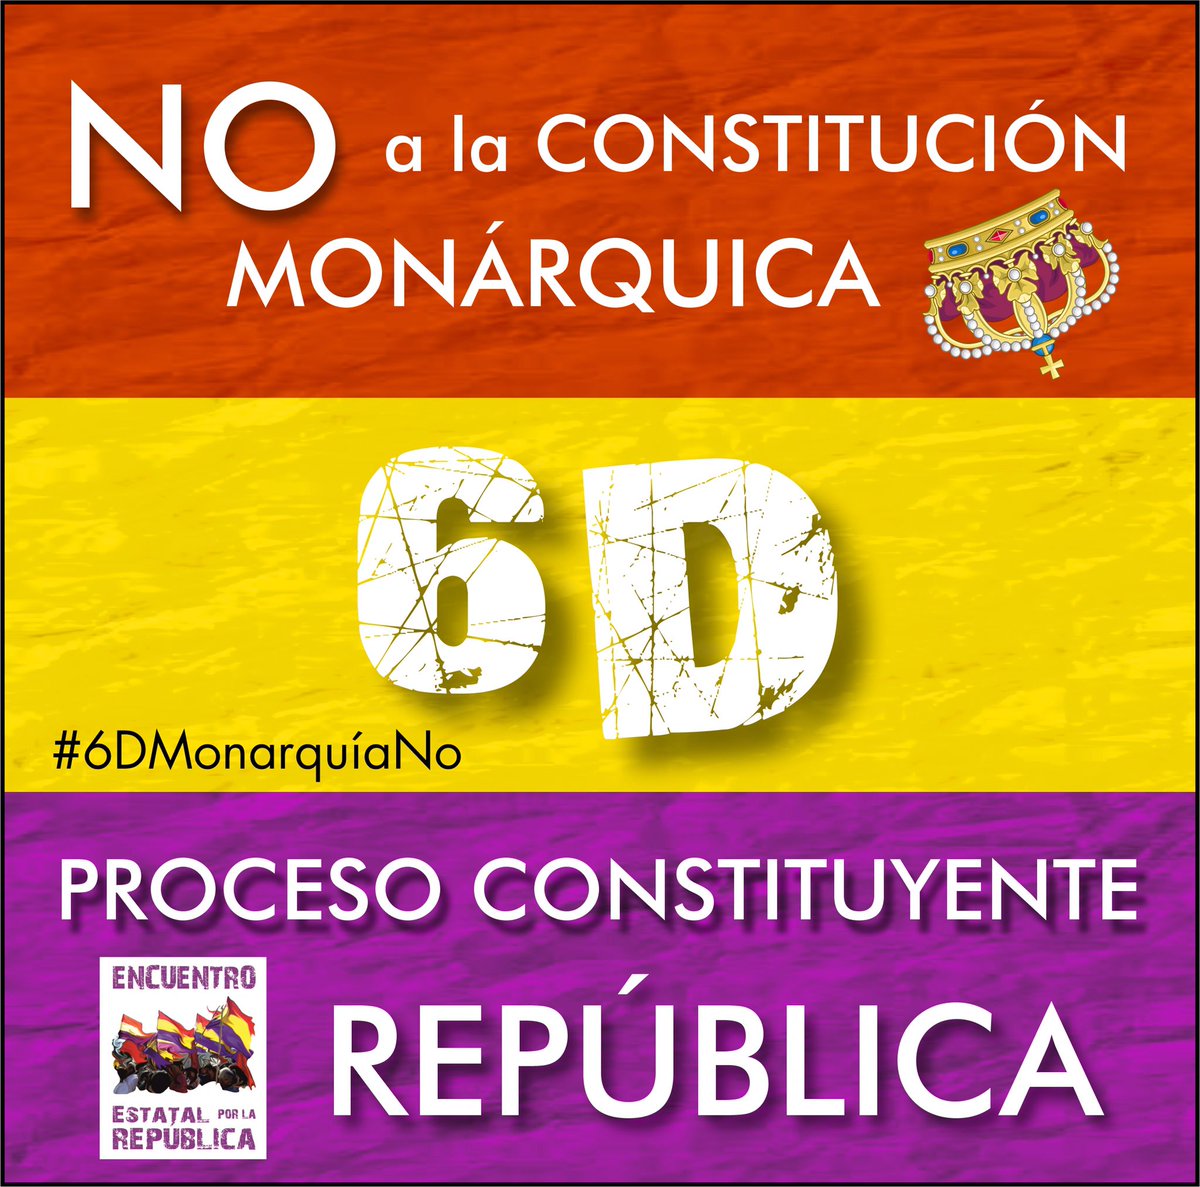 🔴  Acompañarnos hoy 6 de diciembre usando elHT #6DMonarquíaNo 

Proceso Constituyente, República
❤️💛💜